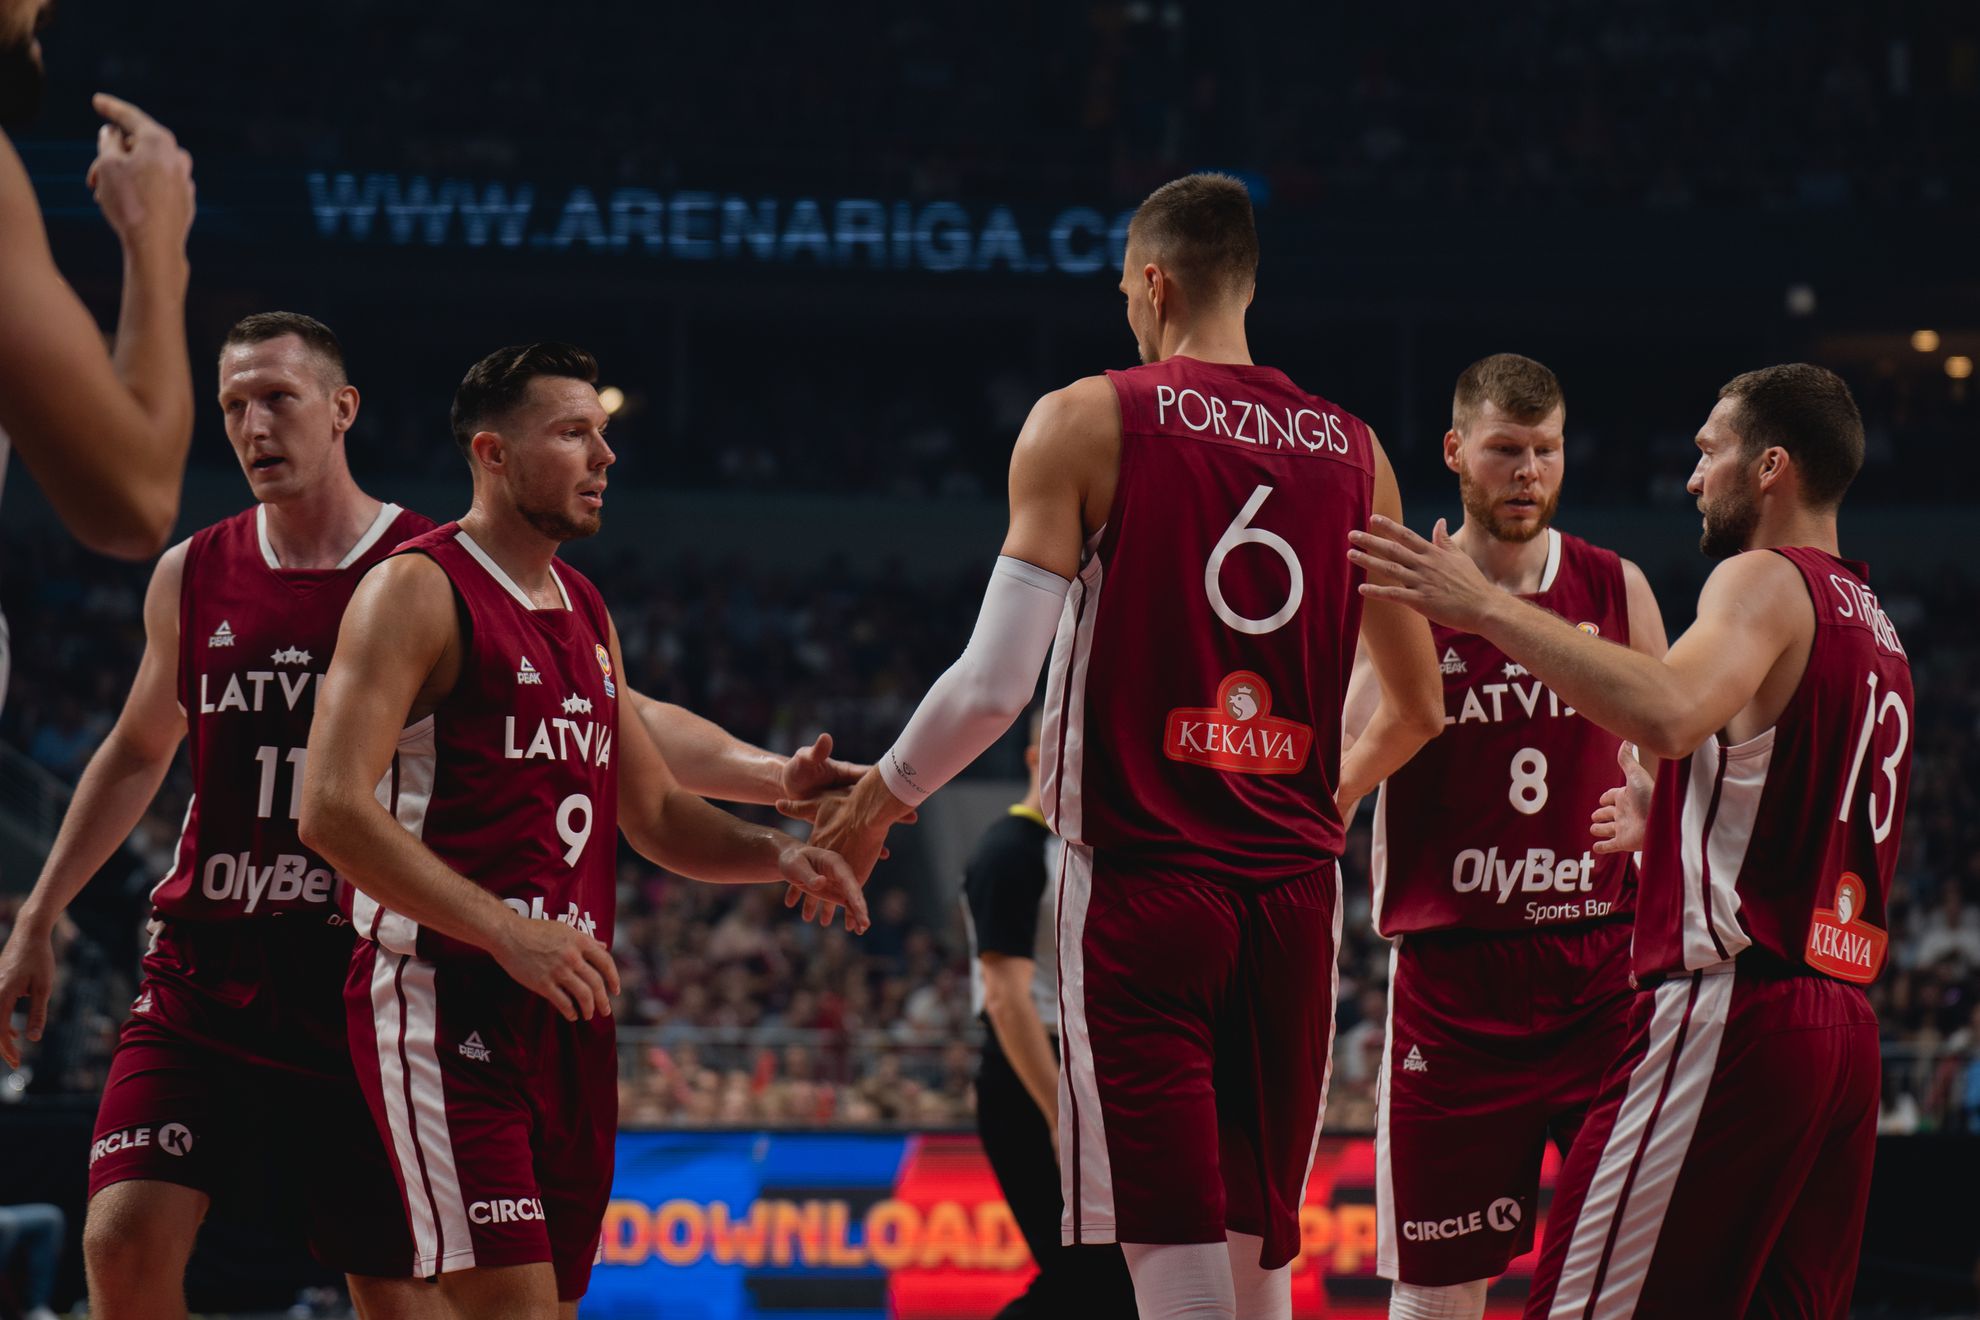 Великобритания - Латвия. Прогноз и ставки на баскетбол. 28 августа 2022 года